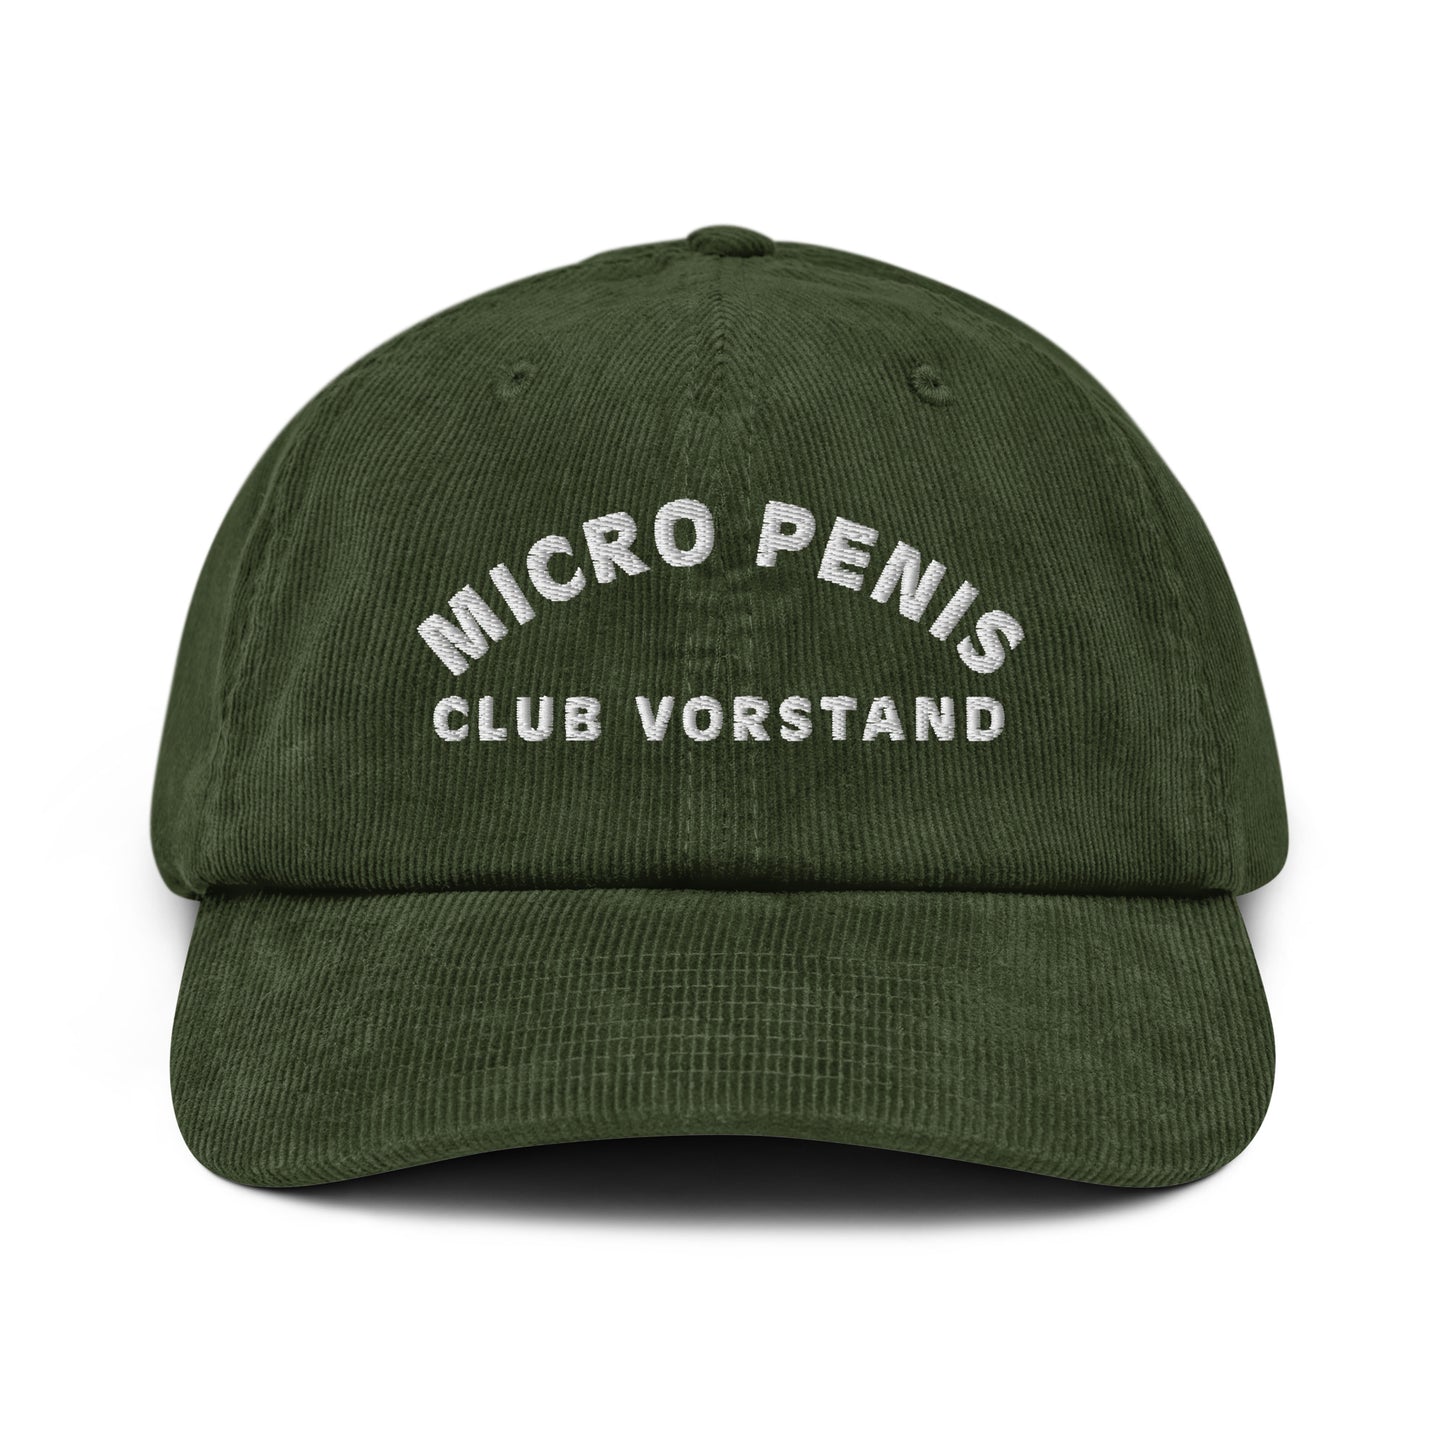 MICRO PENIS CLUB VORSTAND Cord-Cap